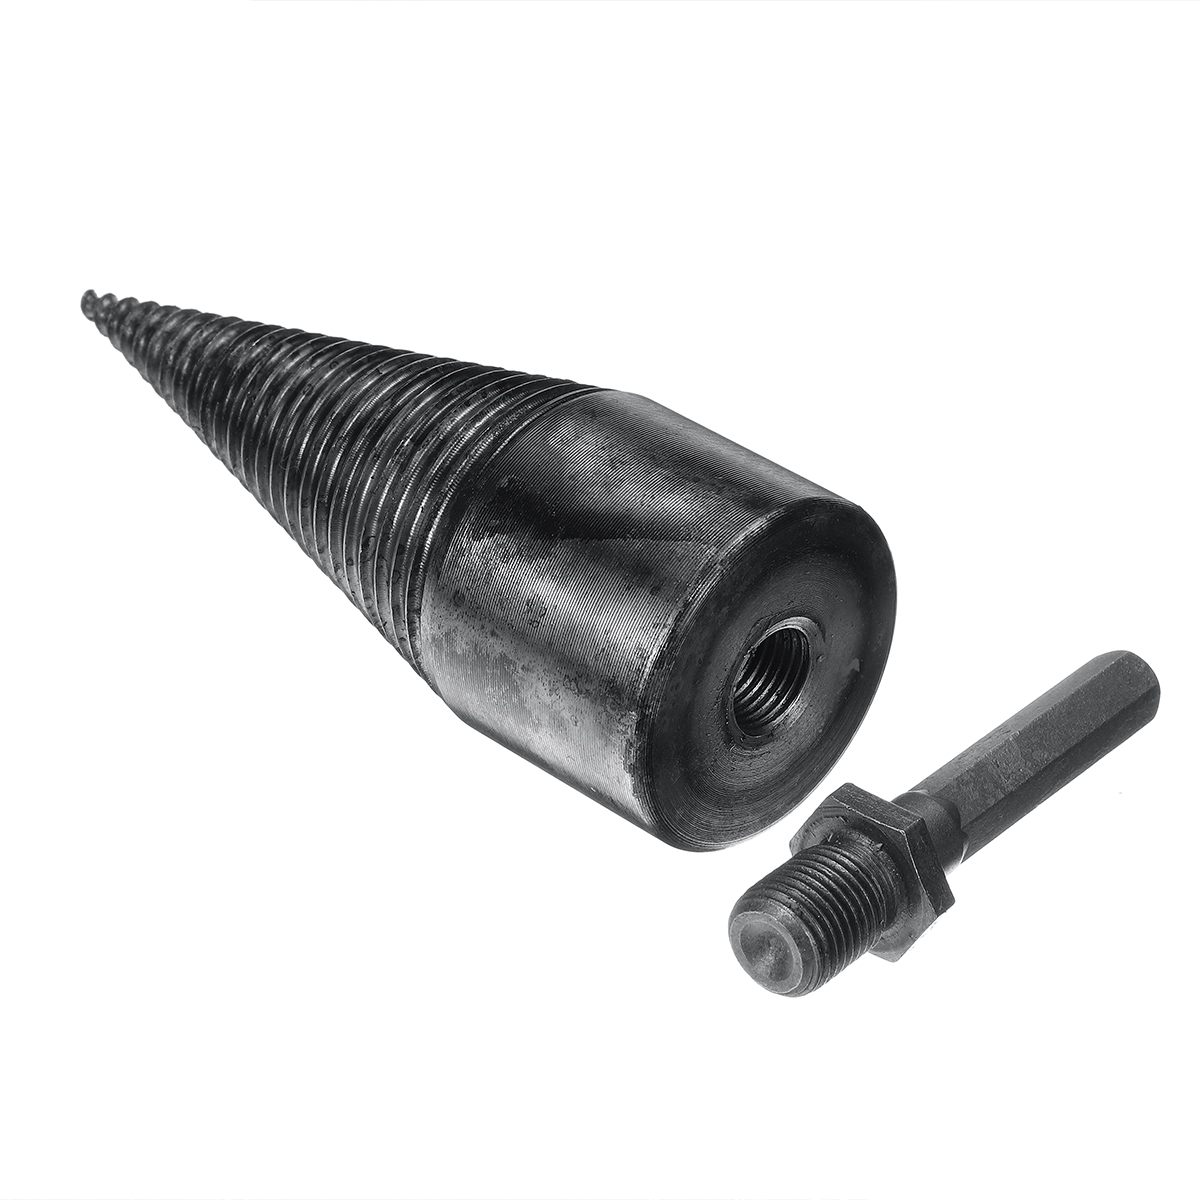 42mm-High-Speed-Steel-Firewood-Splitting-Drill-Bit-Hard-Wood-Cone-Splitter-Bit-1620176-4